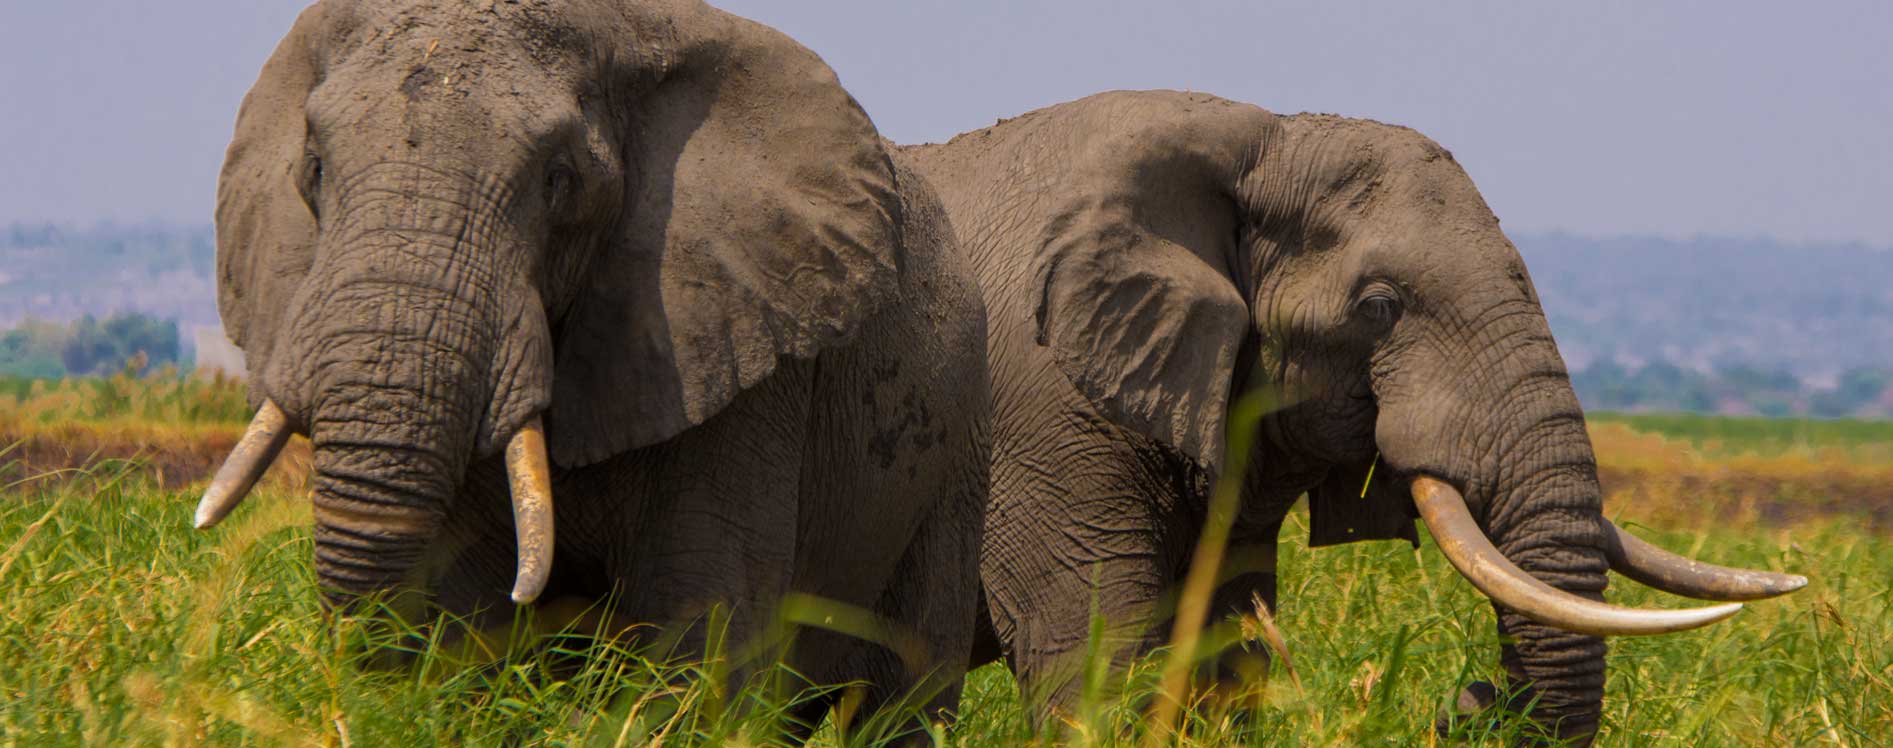 elephants-in-uganda